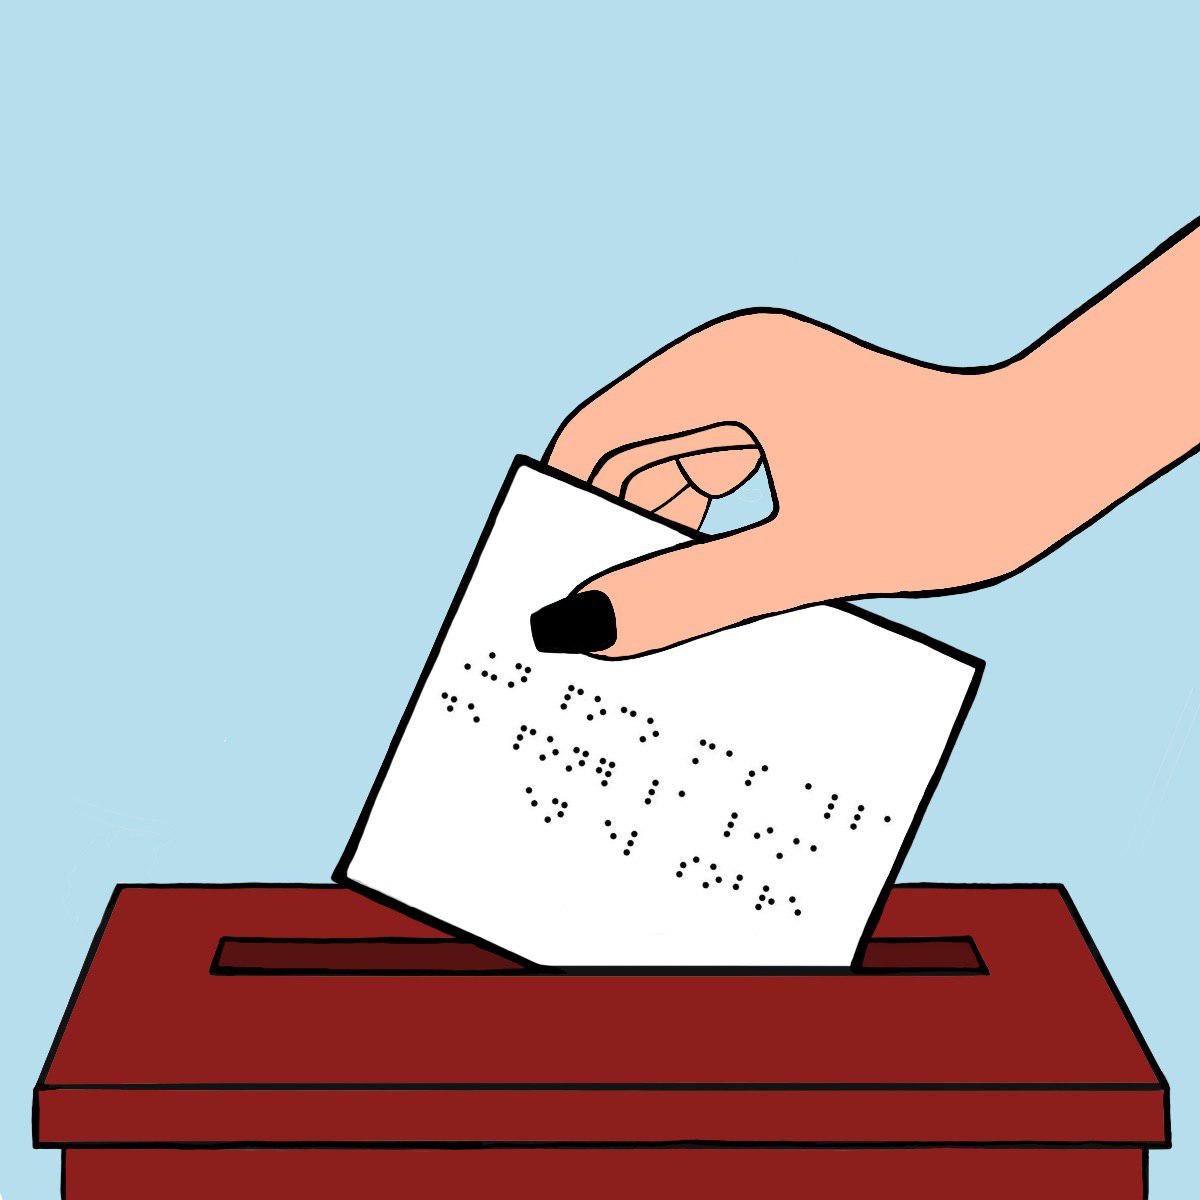 Una mano colocando un sobre en una urna de votación. El sobre tiene algo escrito en braile